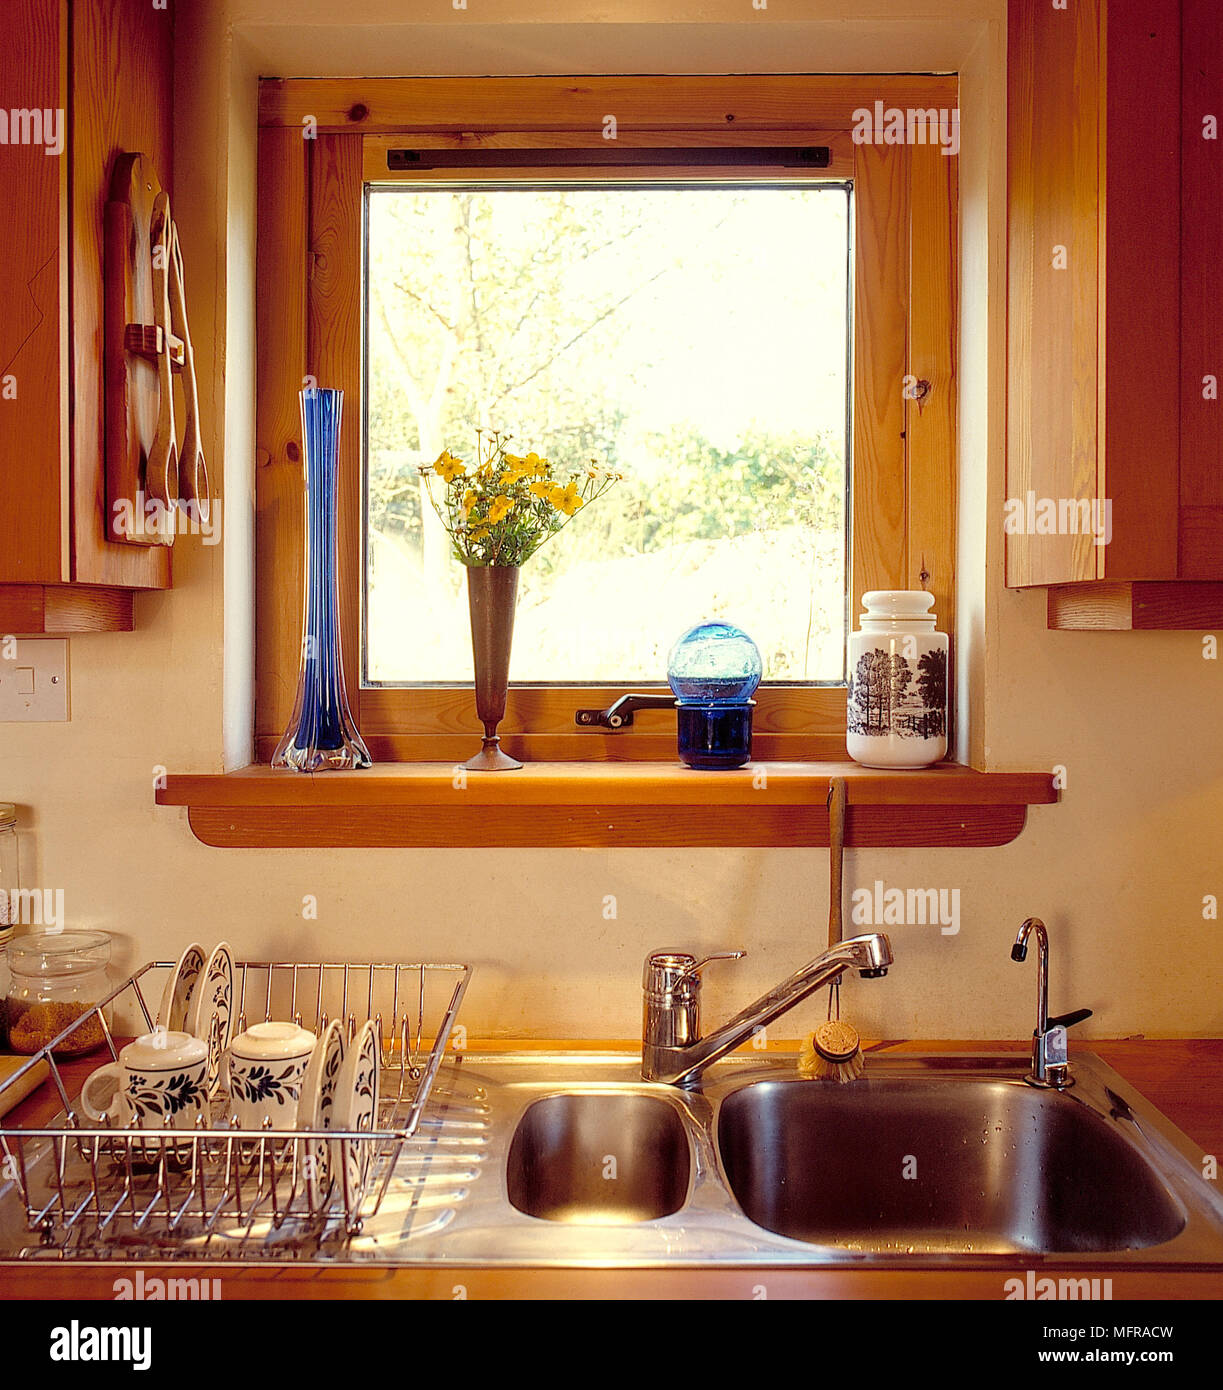 Finestra sopra l'unità lavello in acciaio inox nella cucina di campagna  immagini e fotografie stock ad alta risoluzione - Alamy